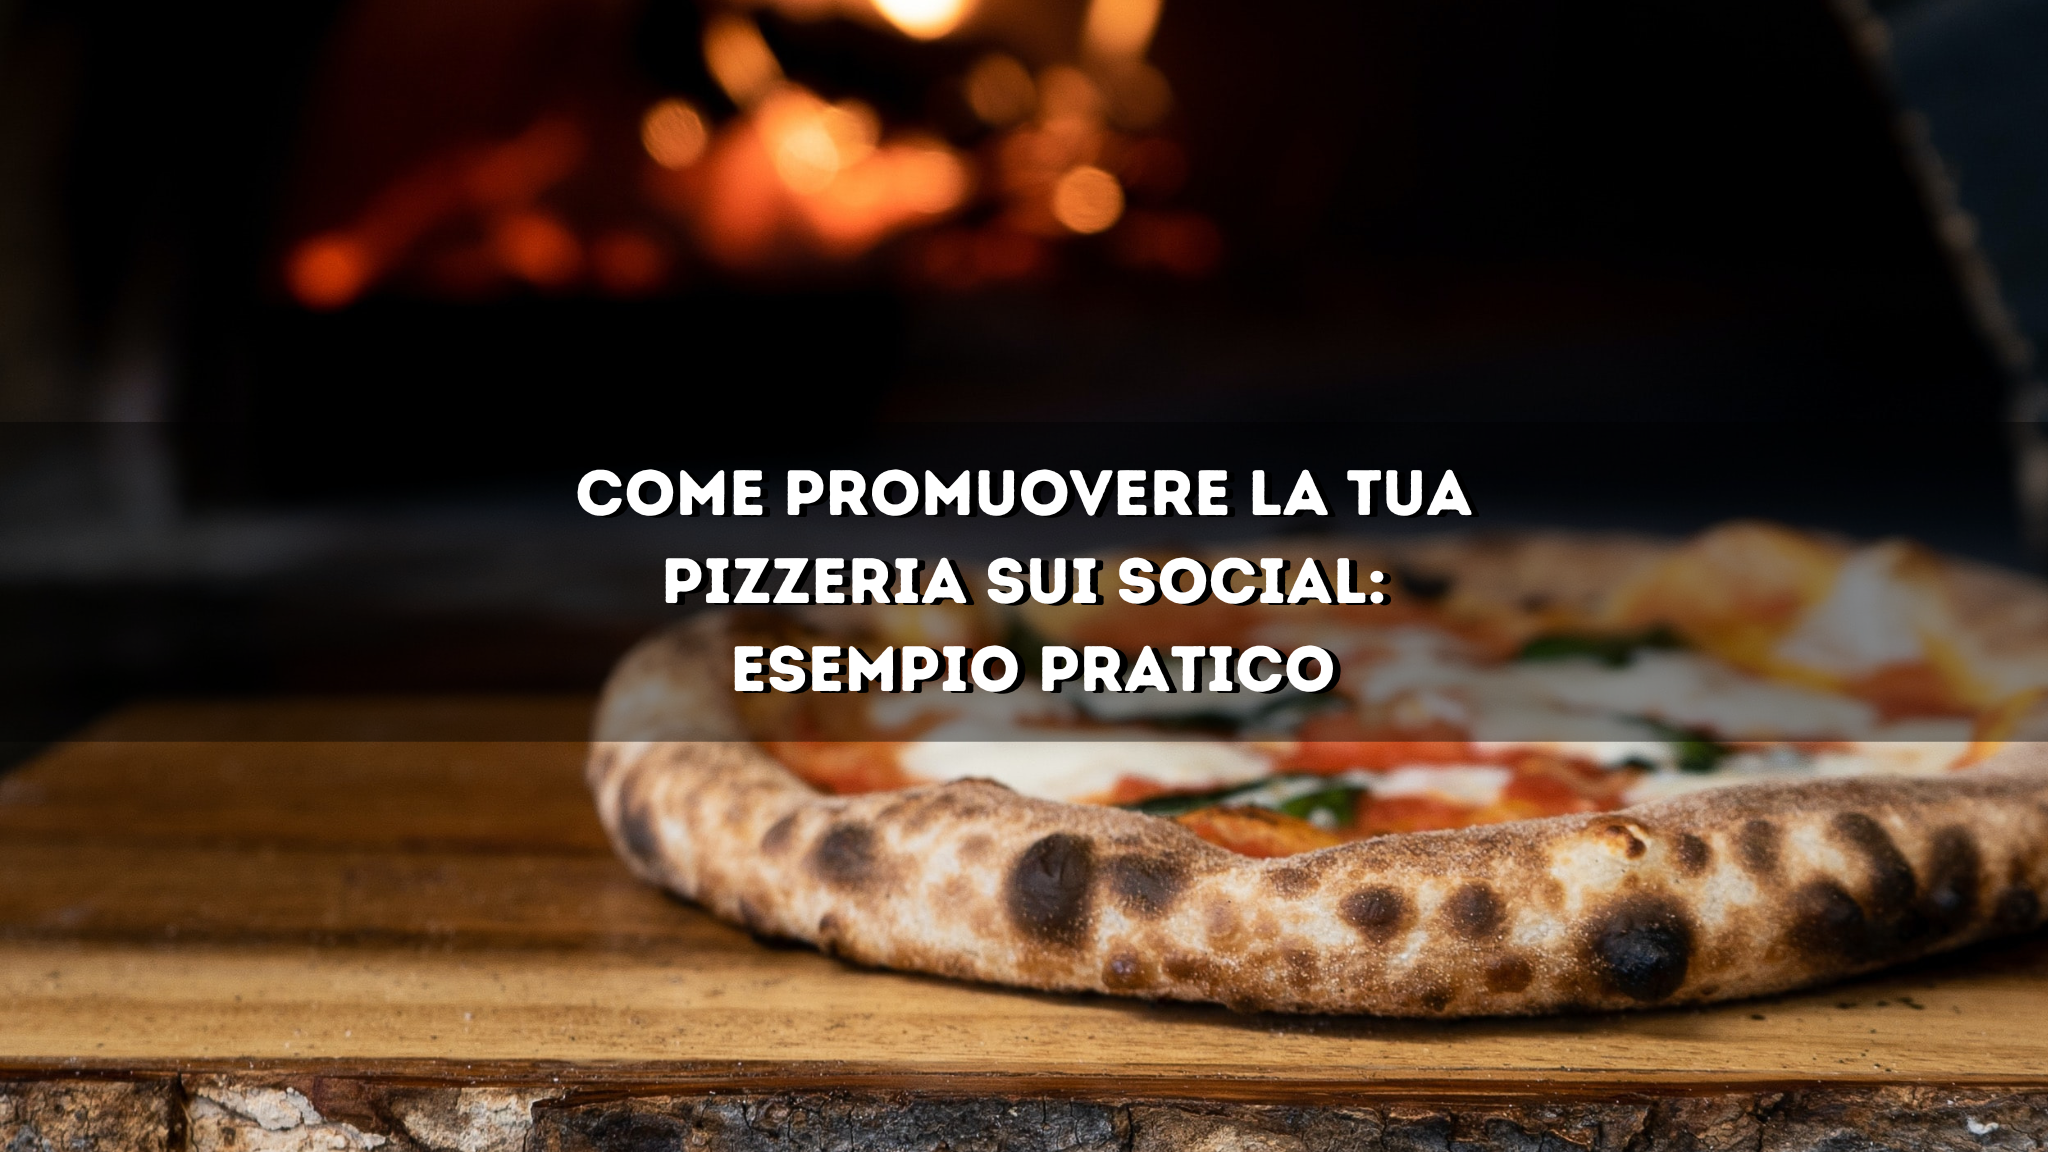 You are currently viewing Come promuovere la tua pizzeria sui social: Esempio pratico